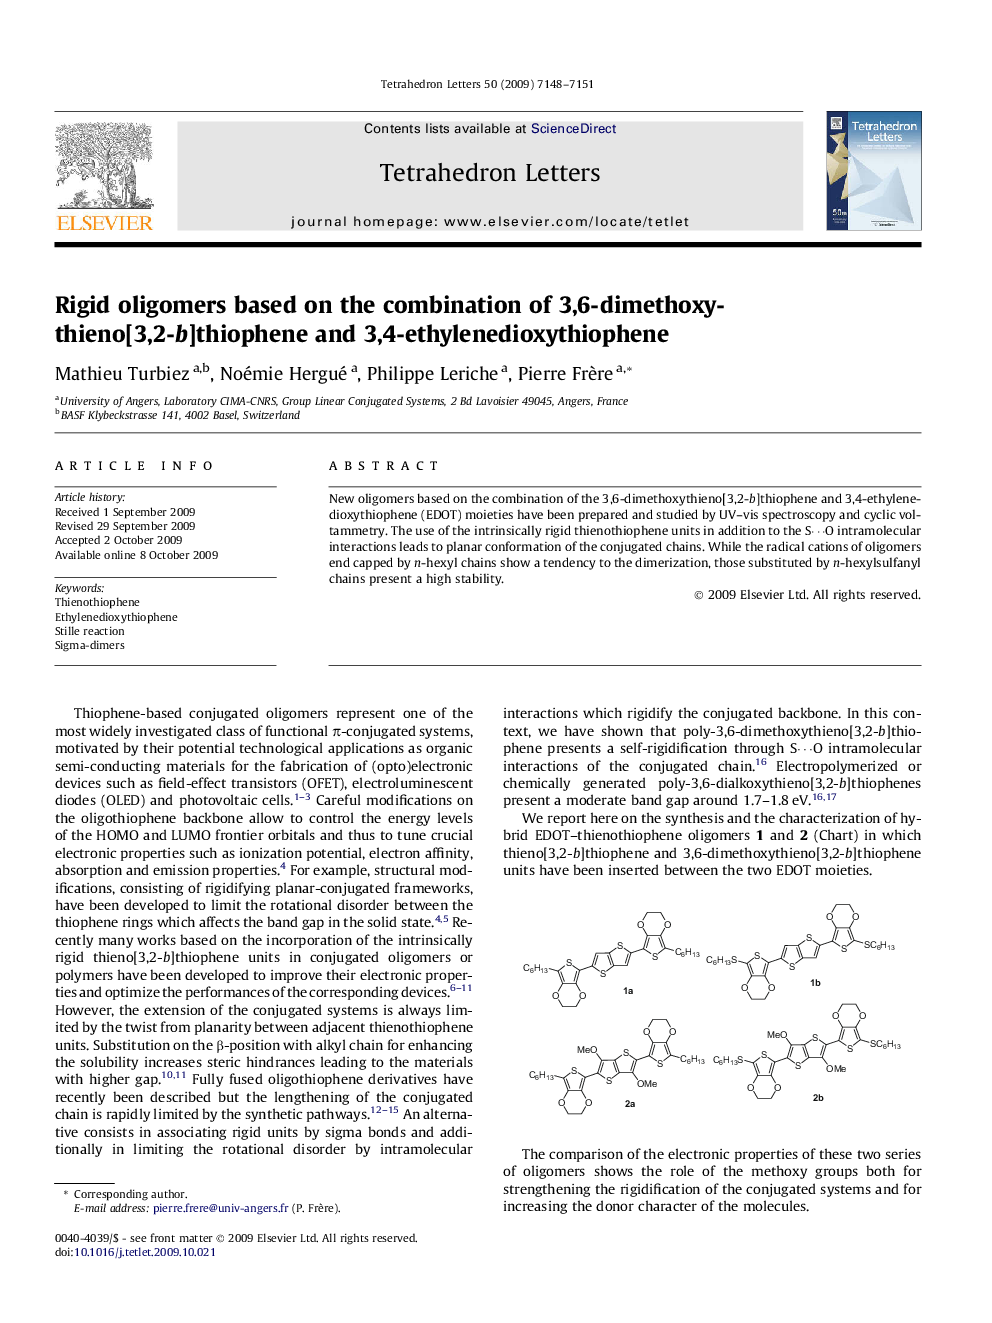 Rigid oligomers based on the combination of 3,6-dimethoxythieno[3,2-b]thiophene and 3,4-ethylenedioxythiophene